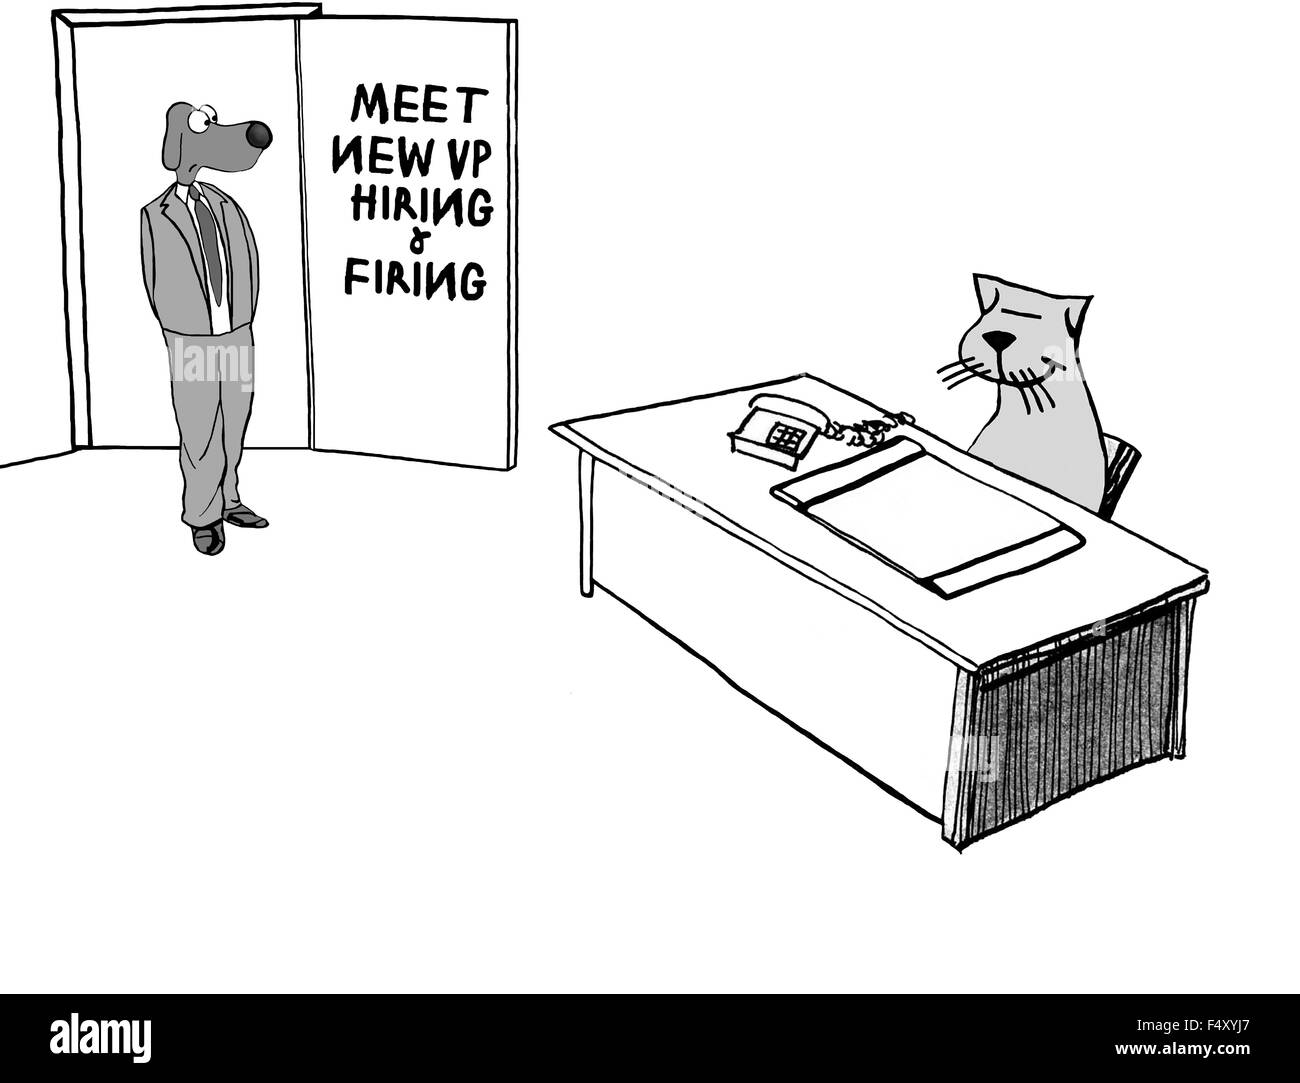 Geschäft Cartoon zeigt Hund Eintritt in das Amt des neuen Mitarbeiters Katze, "Treffen neue VP Hiring & feuern". Stockfoto